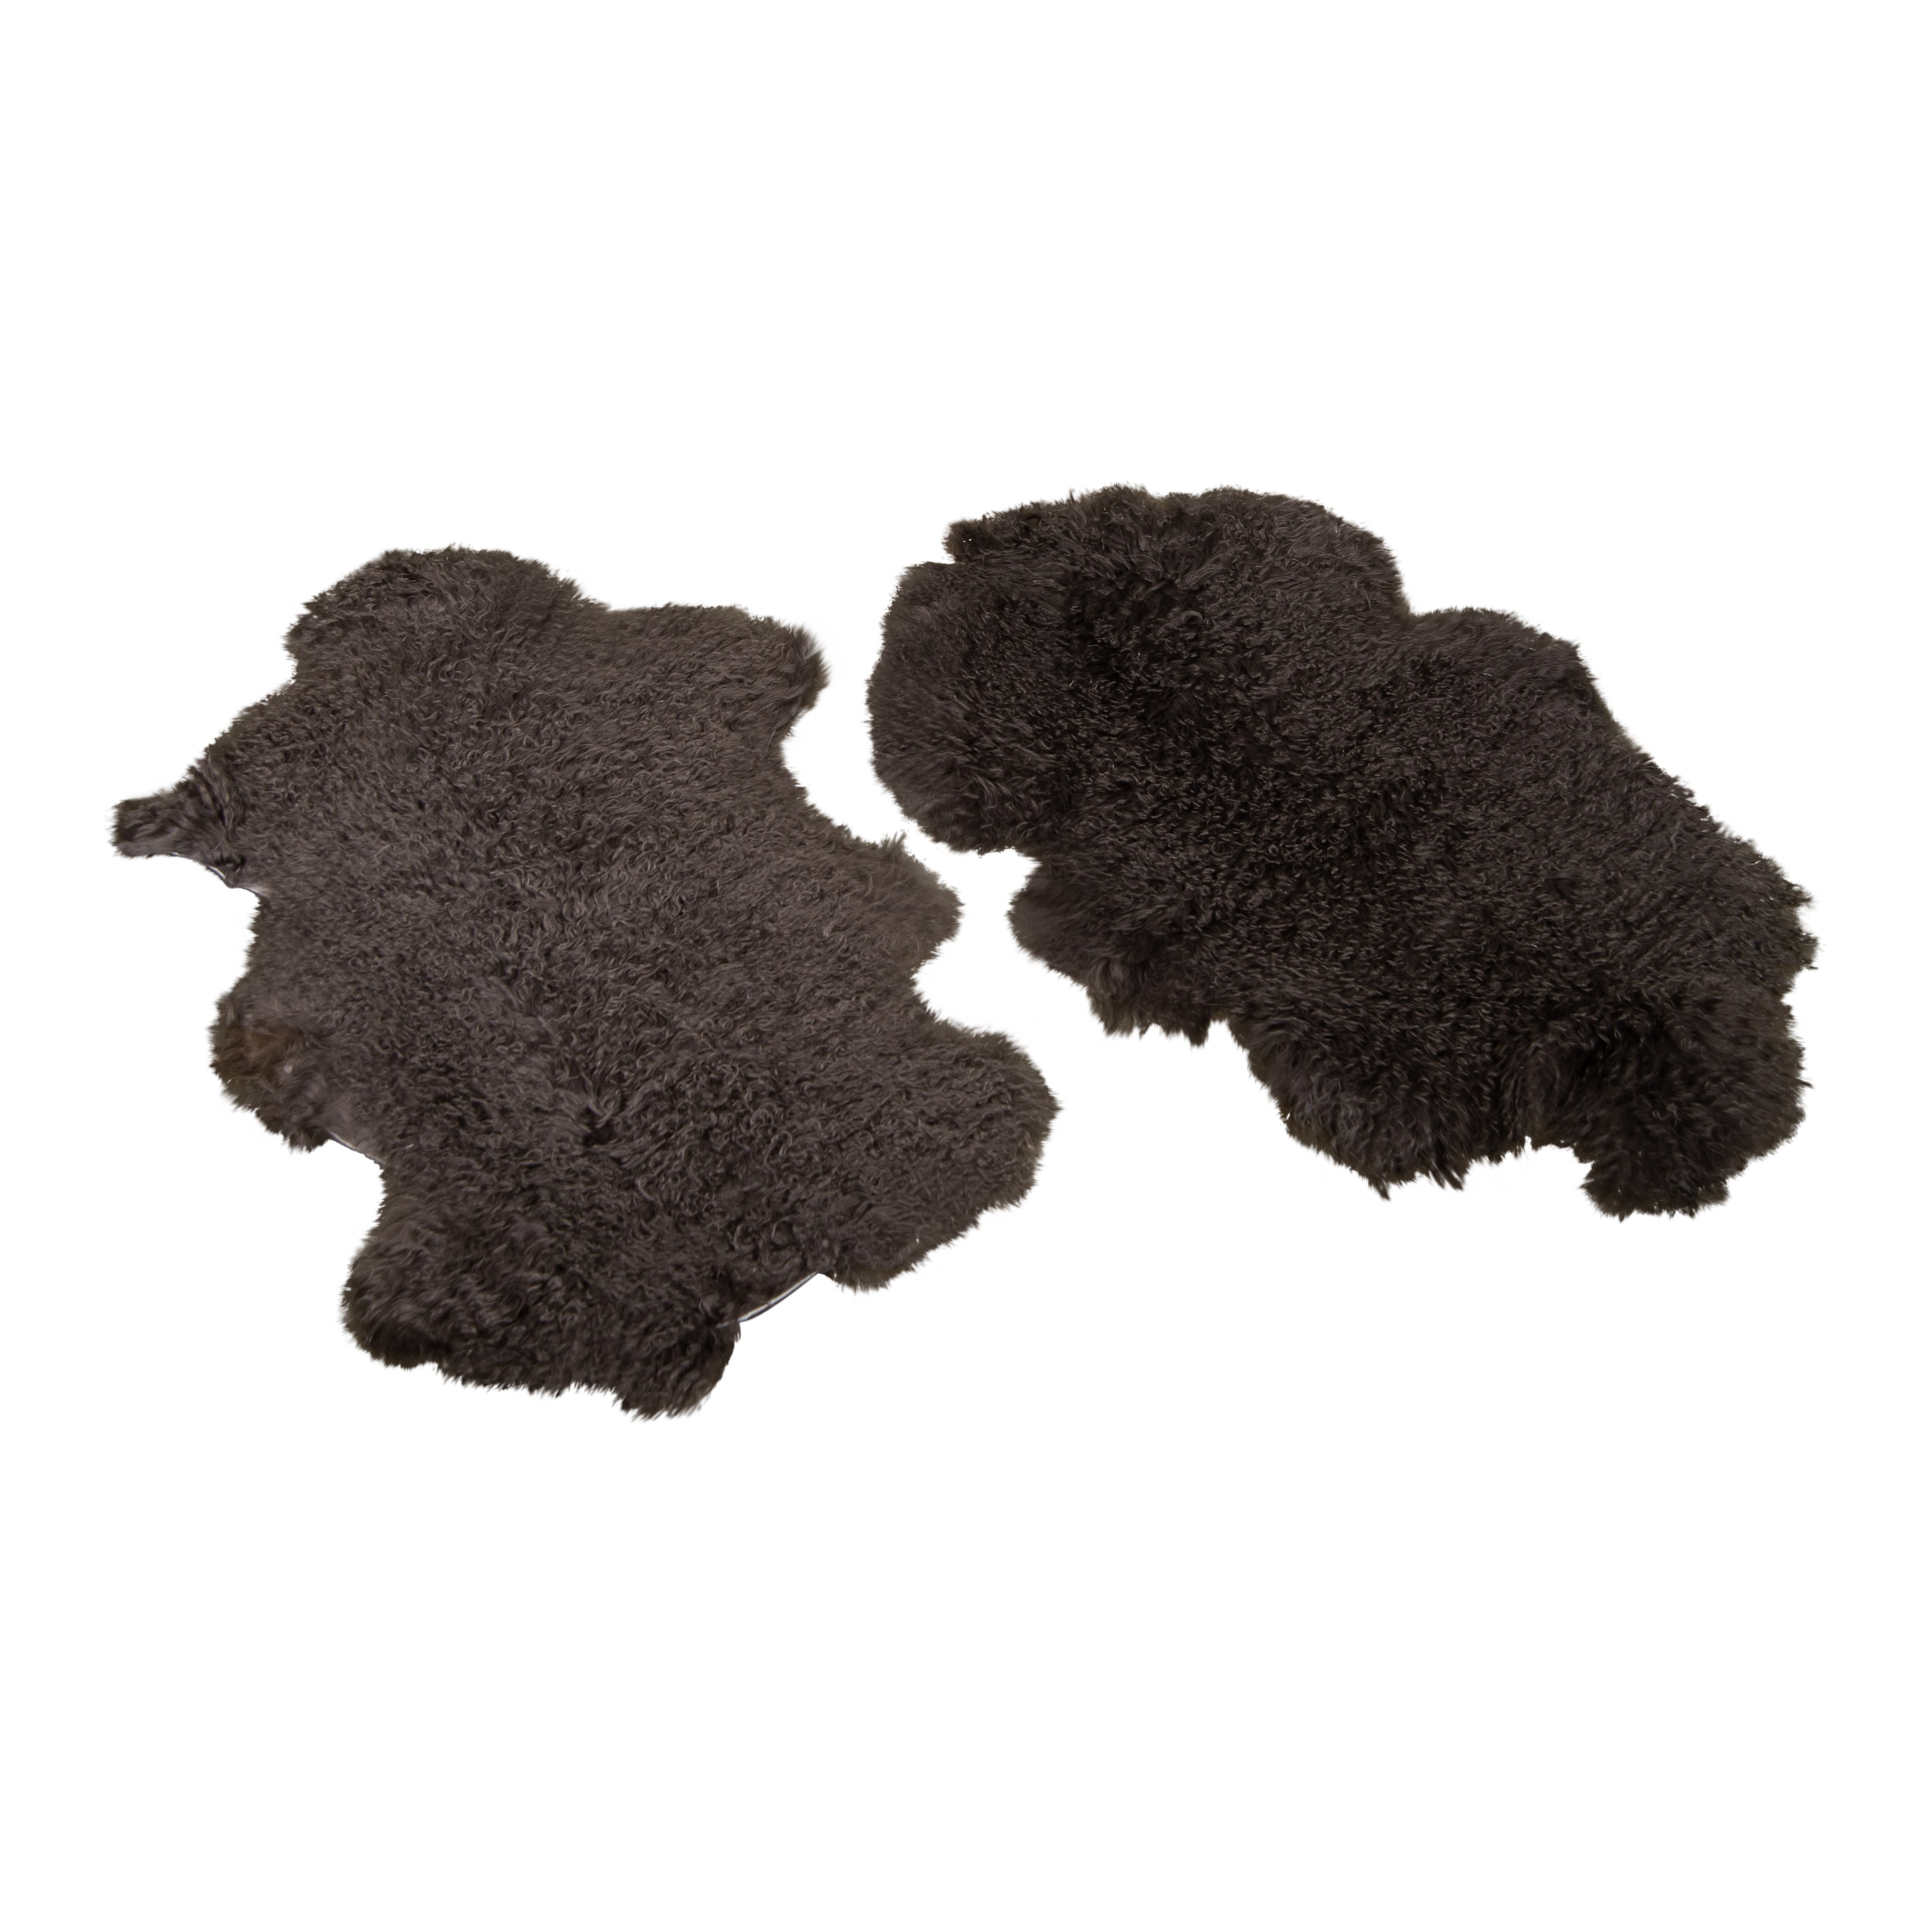 Celine Charcoal Furs (pair)